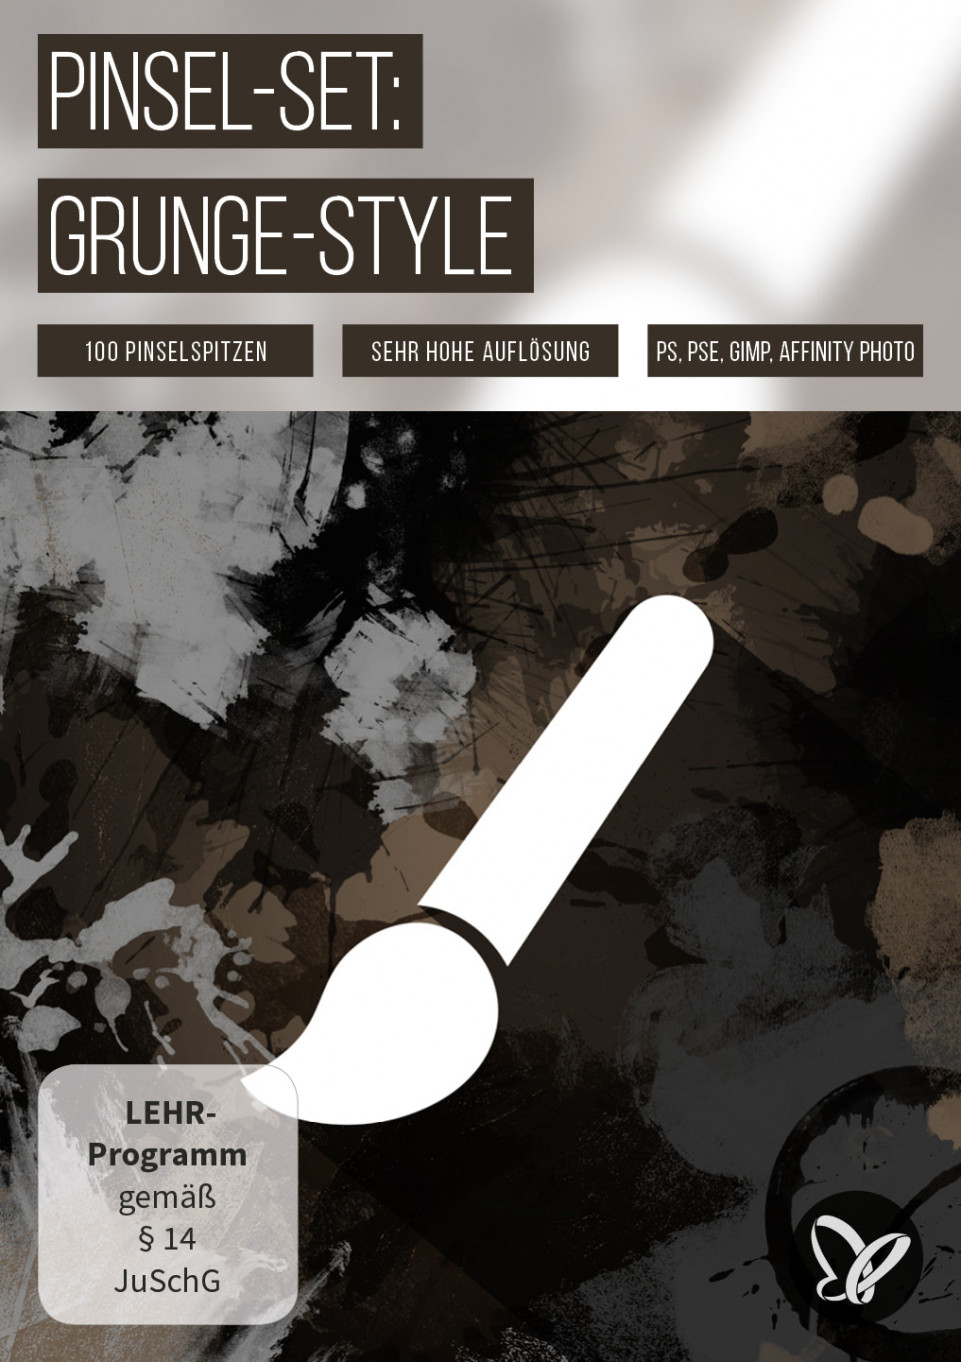 Effektstarke Grunge-Brushes für Photoshop und Co